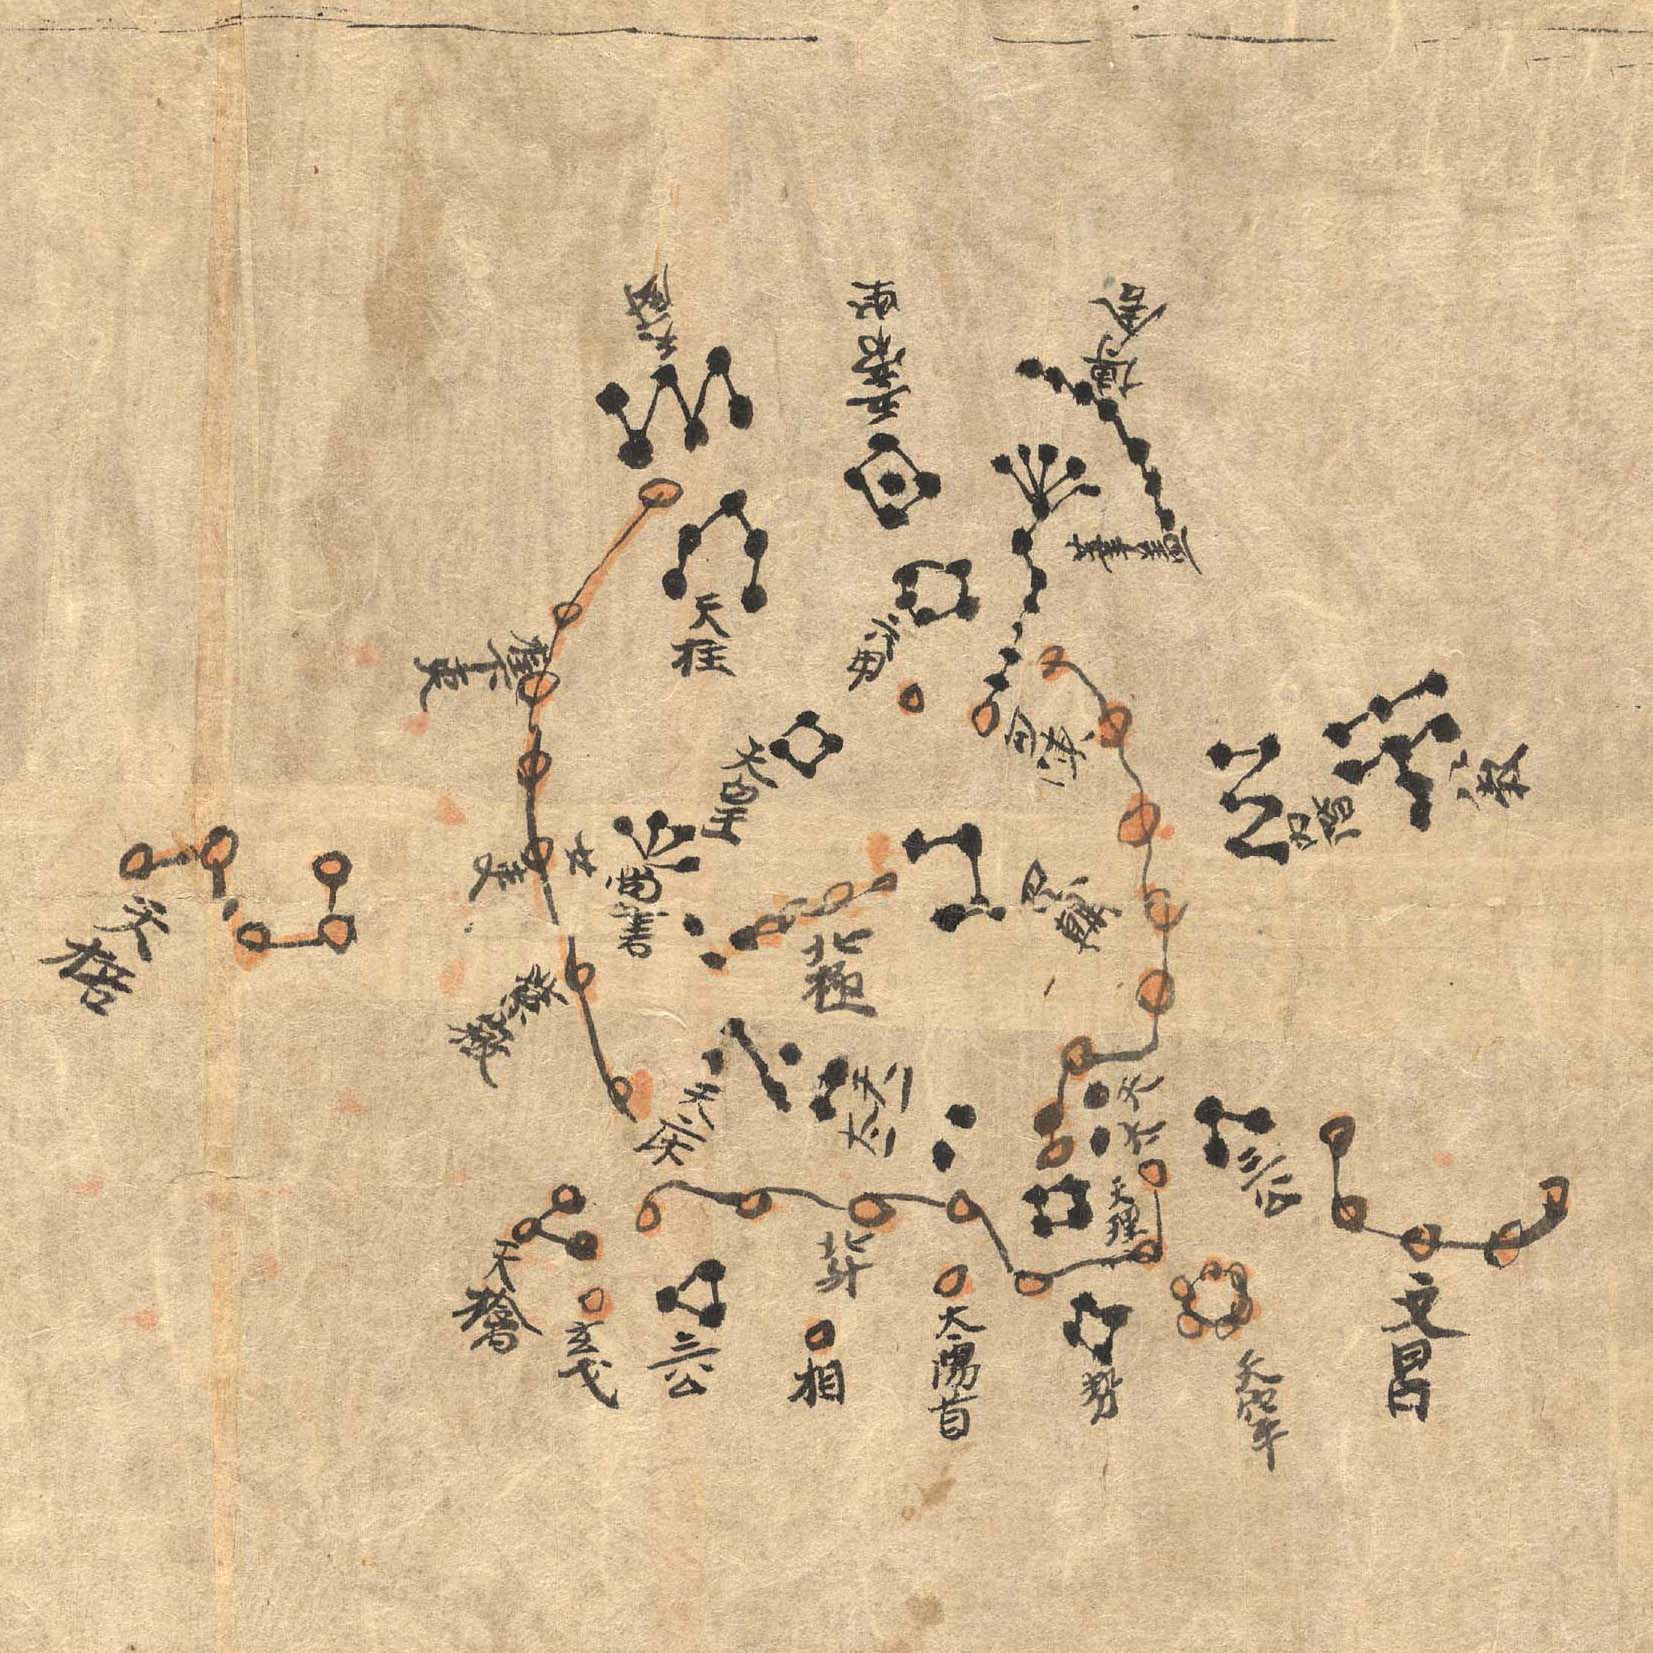 Dunhuang Star Atlas